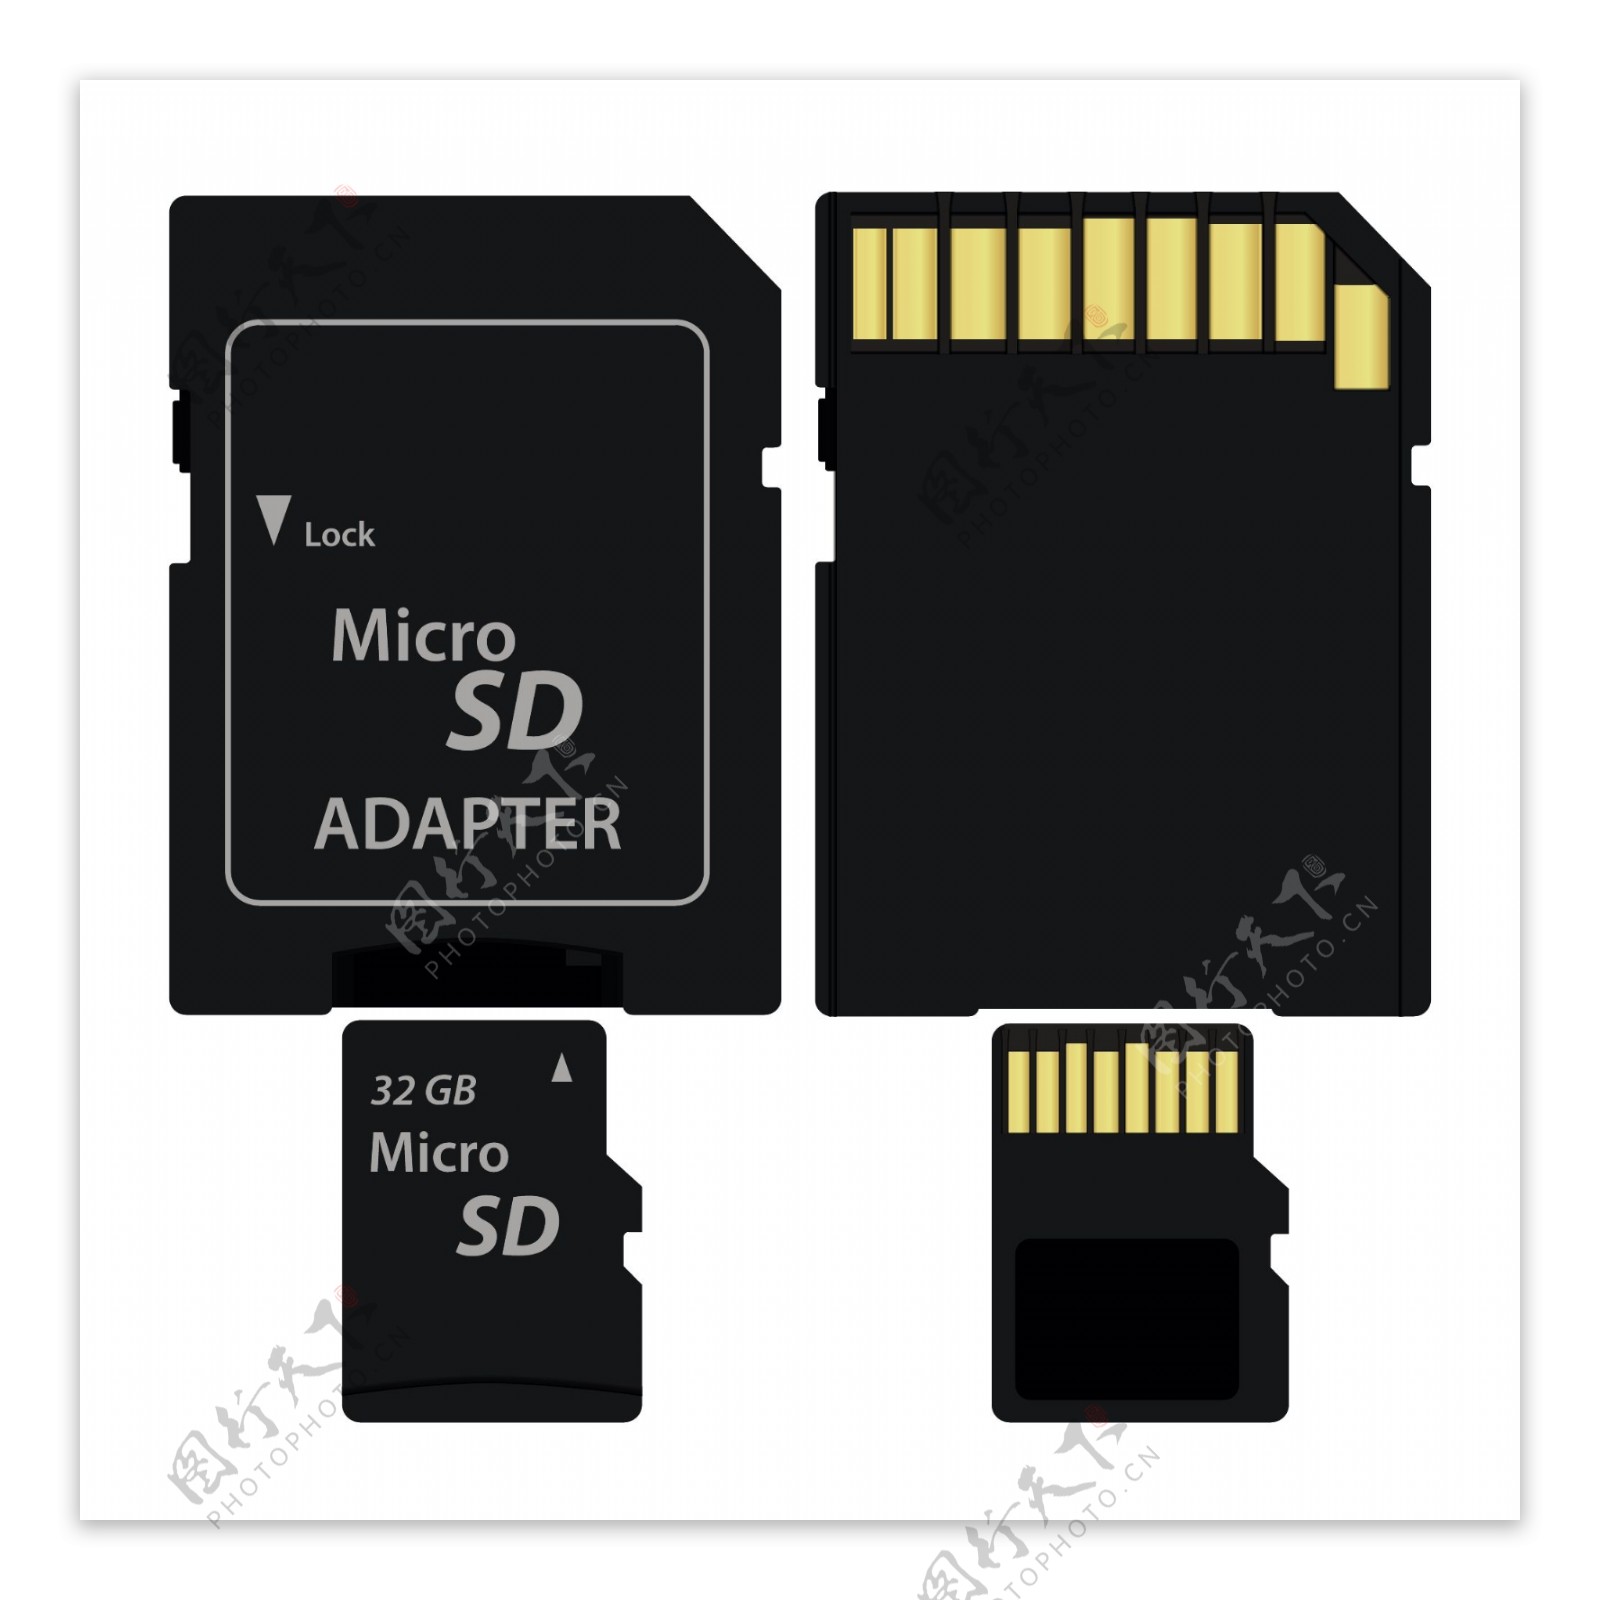 微型SD适配器